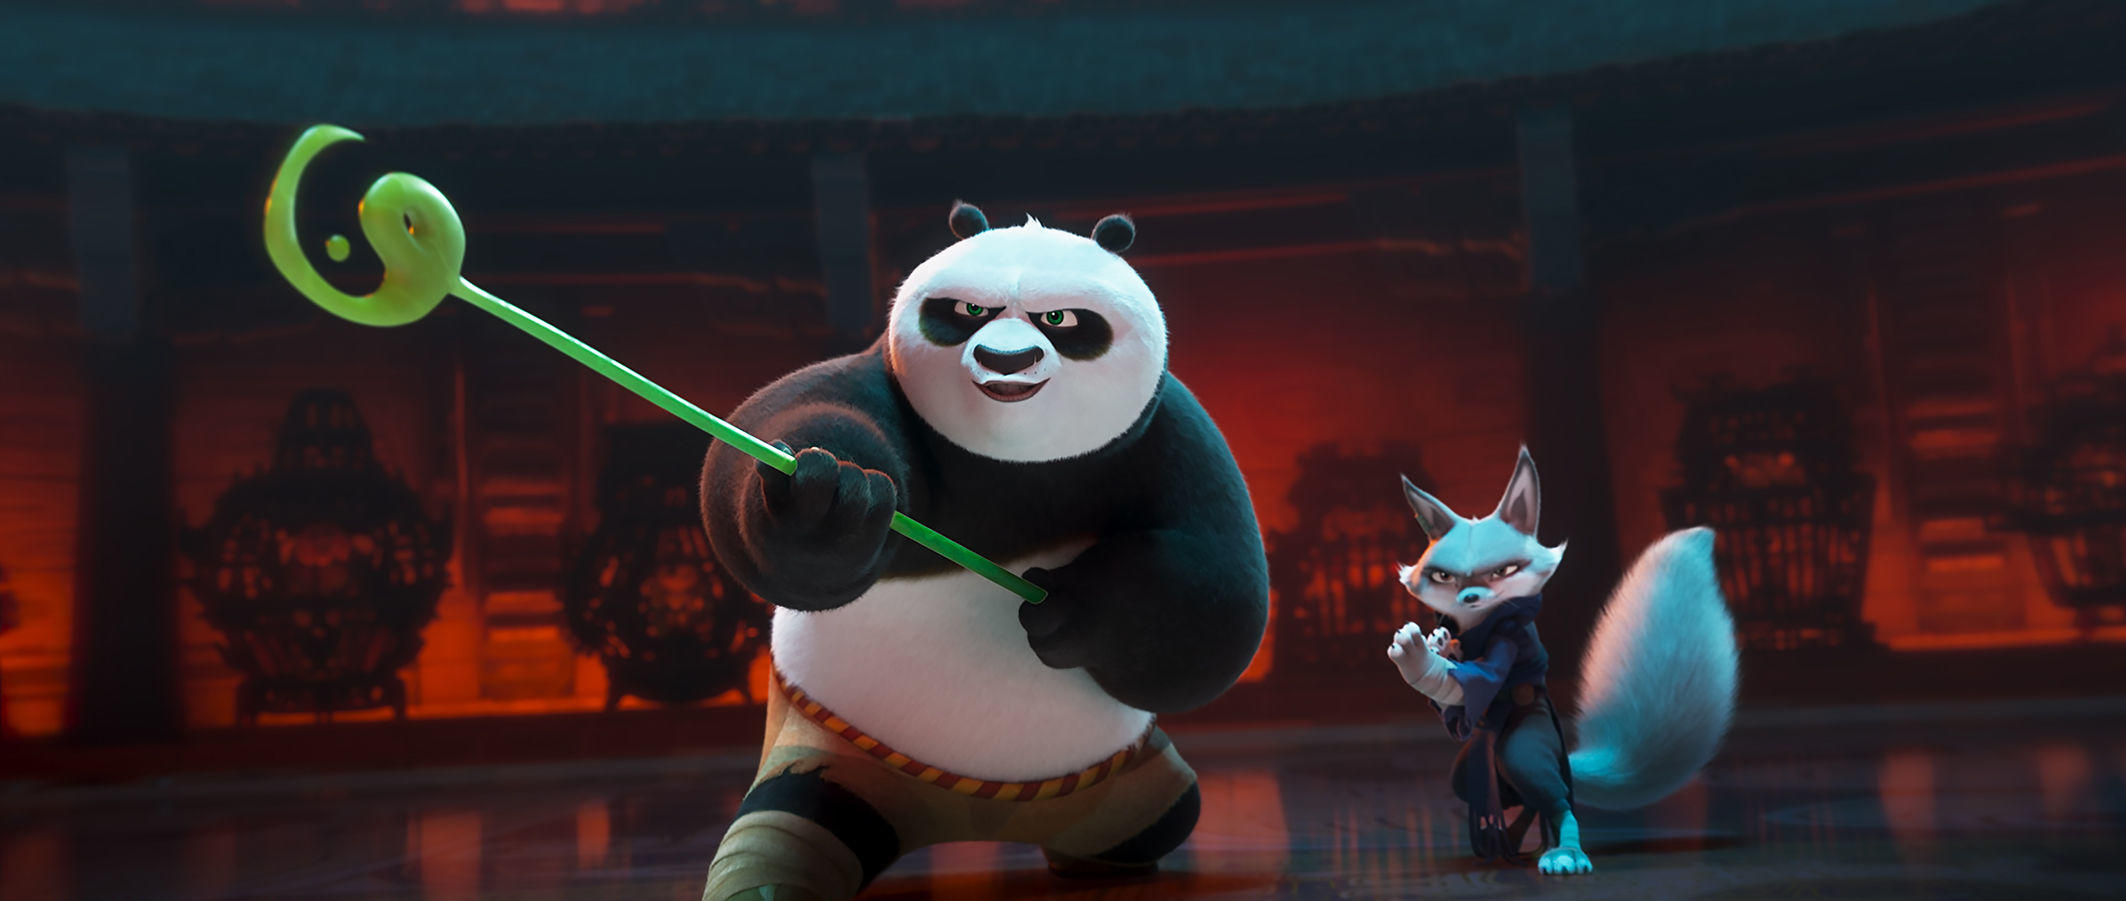 Dans ce quatrième opus, «Kung Fu Panda 4», en salles ce mercredi 27 mars, le panda quitte son papa oie et son papa panda pour se choisir un successeur en tant que guerrier dragon. DreamWorks Animation